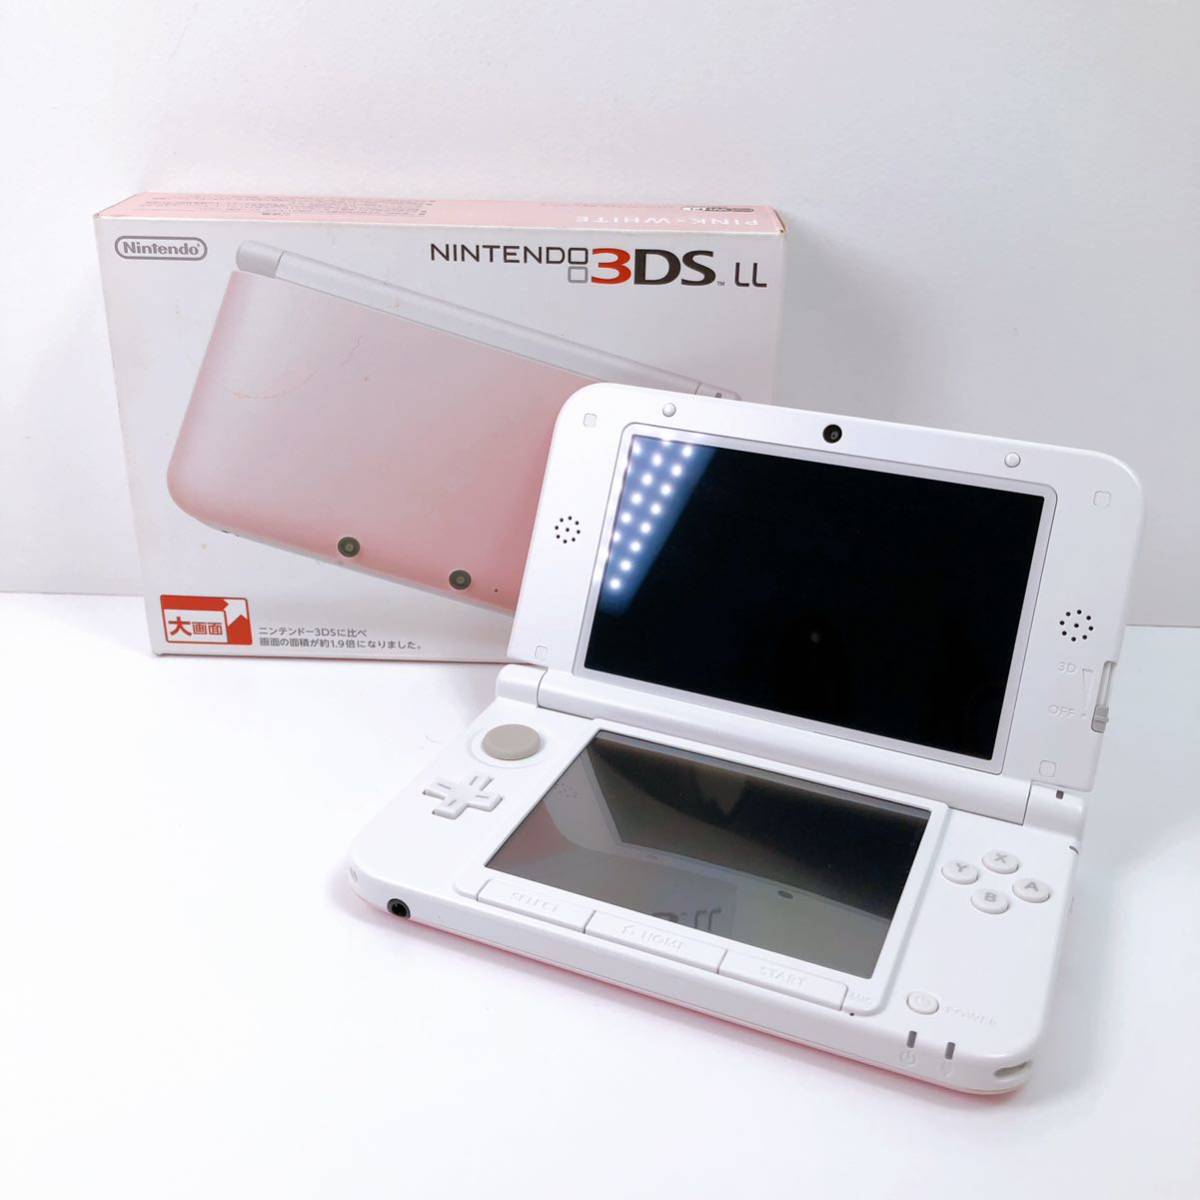 92【中古】Nintendo 3DS LL 本体 SPR-001 ピンク/ホワイト